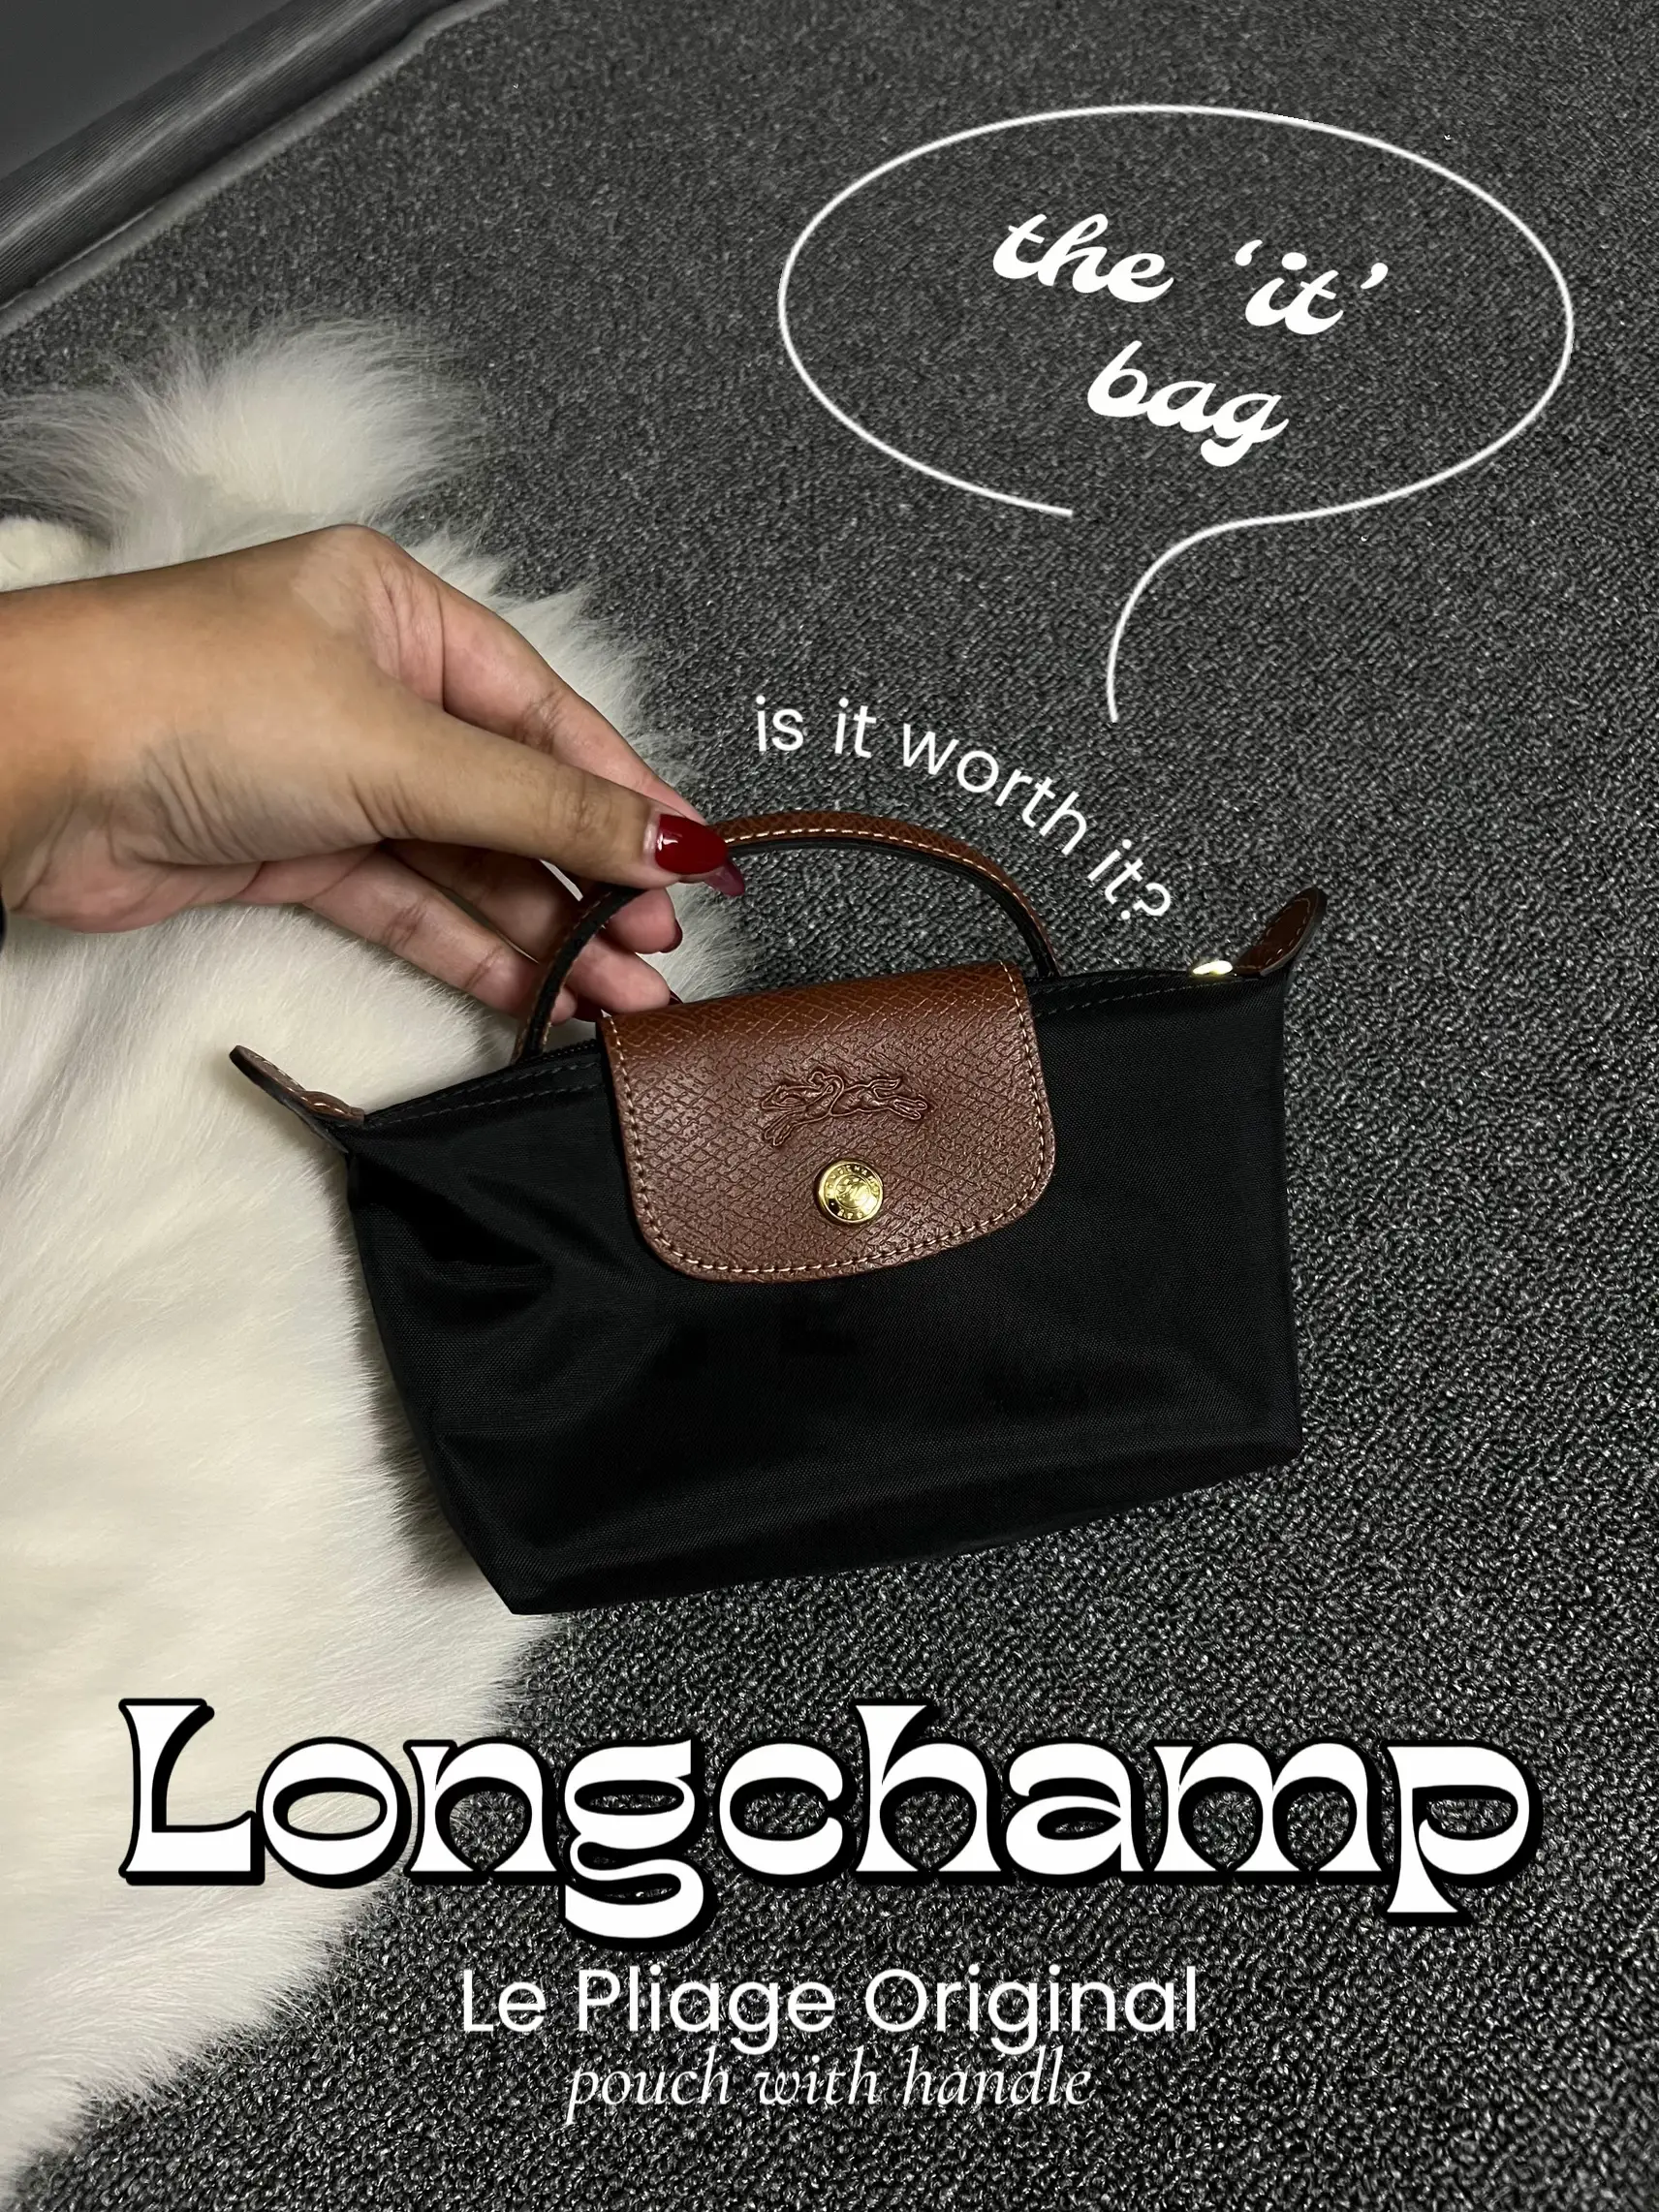 Longchamp Le Pliage Original Pouch